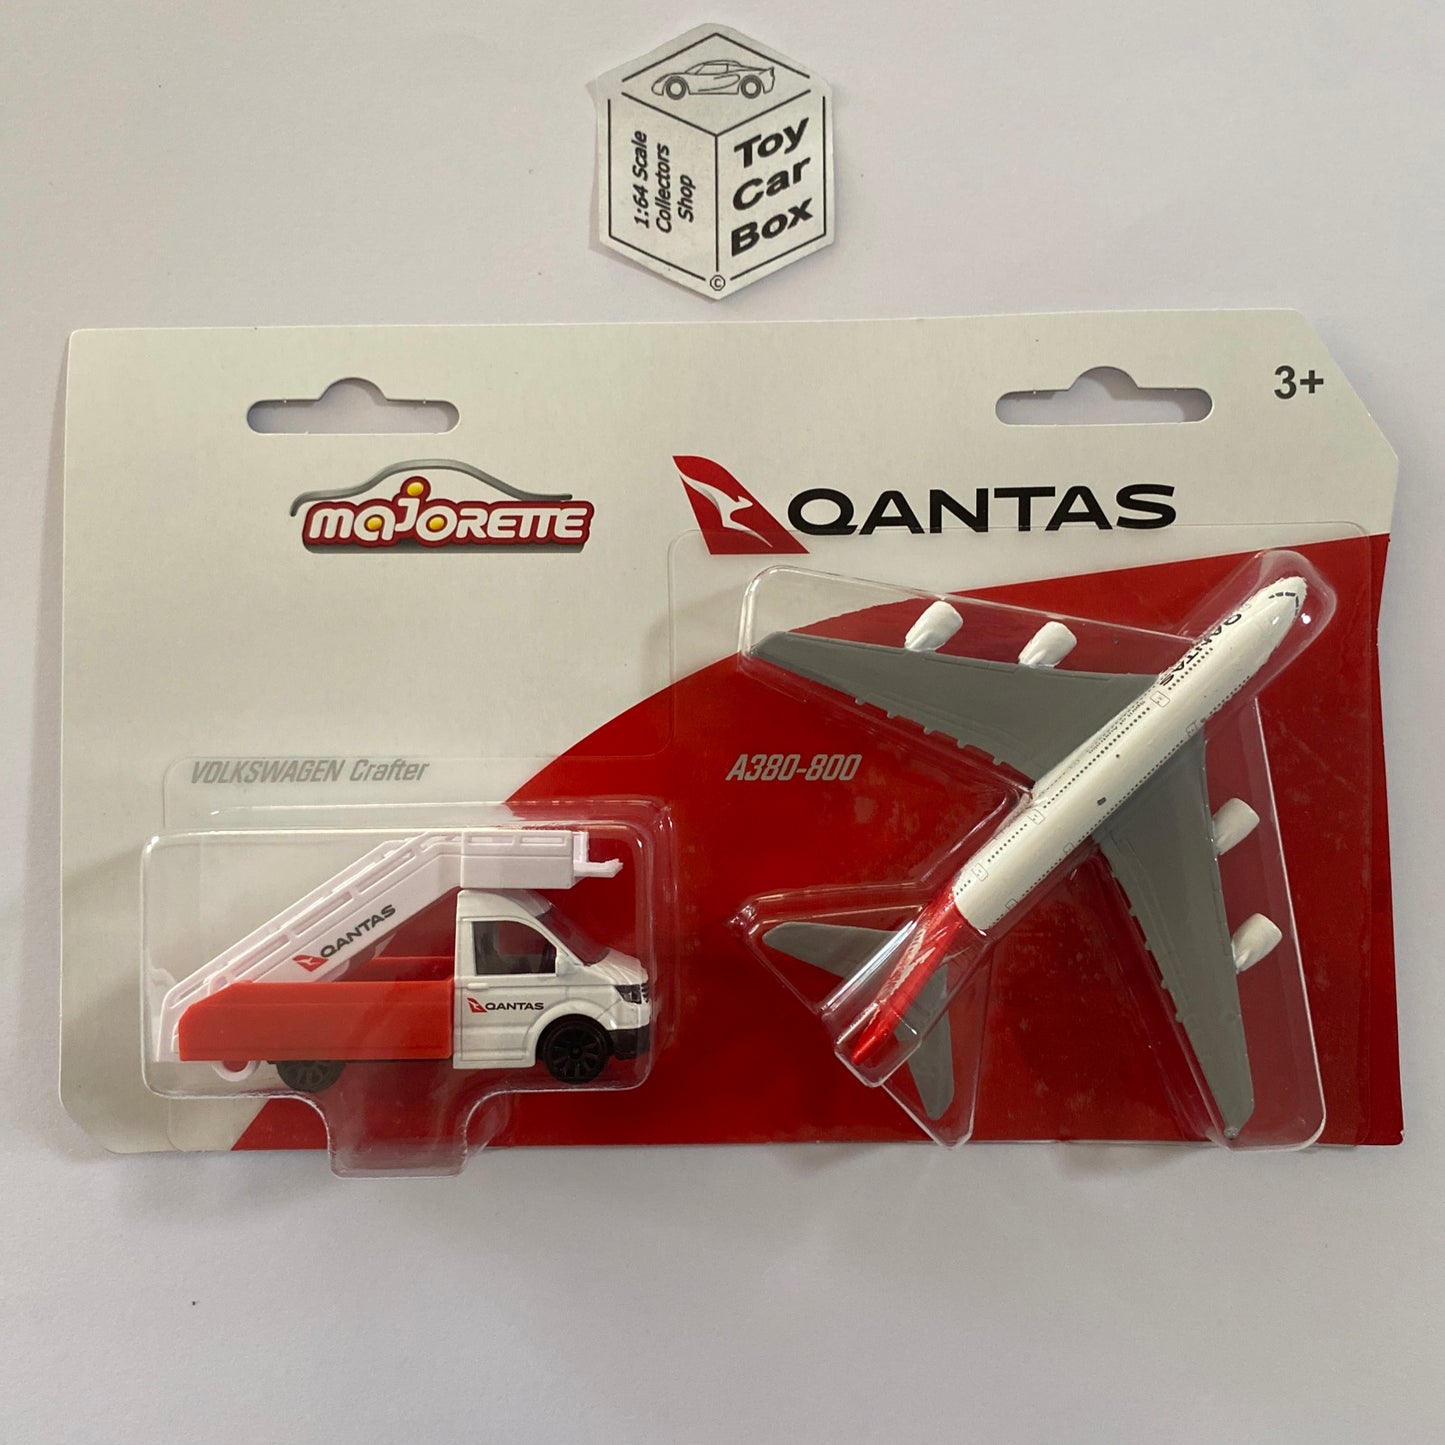 MAJORETTE Qantas - VW Crafter & Airbus A380-800 (1:64 Vehicle & Plane Set) L64